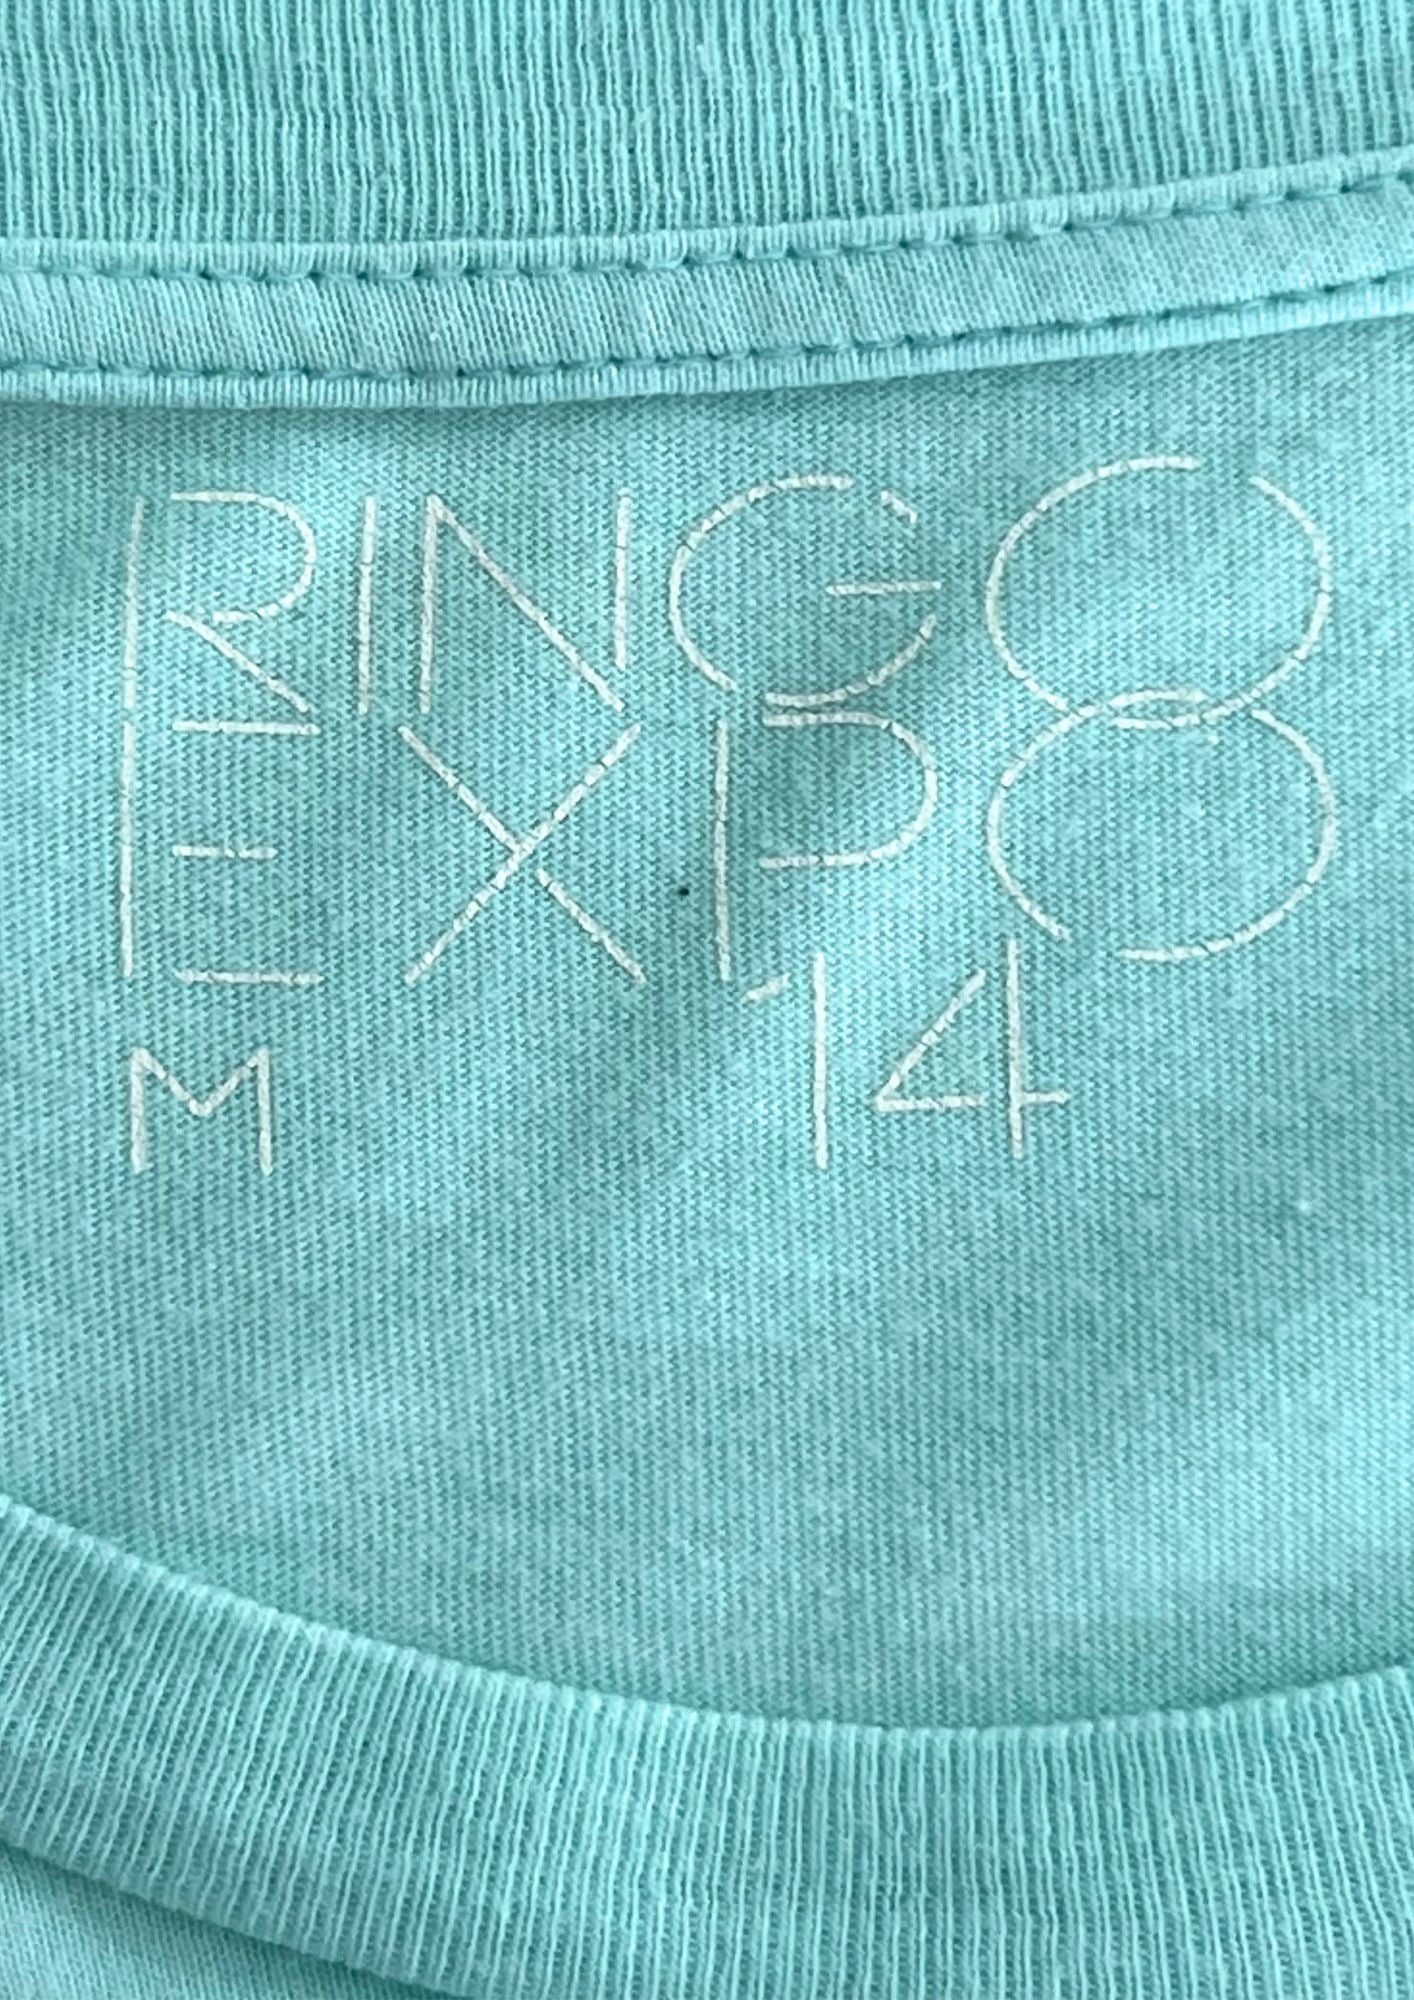 2014 RINGO SHEENA RINGO EXPO 'Sunny' Japanese Band Tee